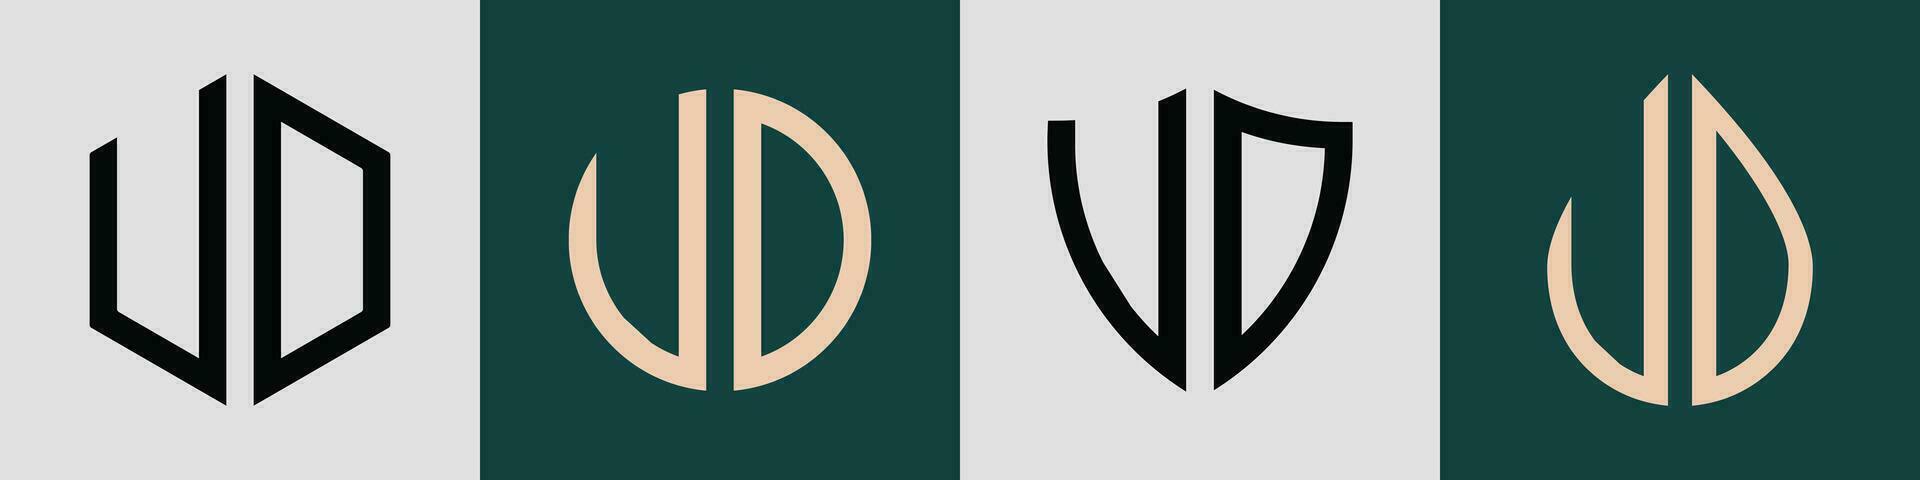 kreativ einfach Initiale Briefe ud Logo Designs bündeln. vektor